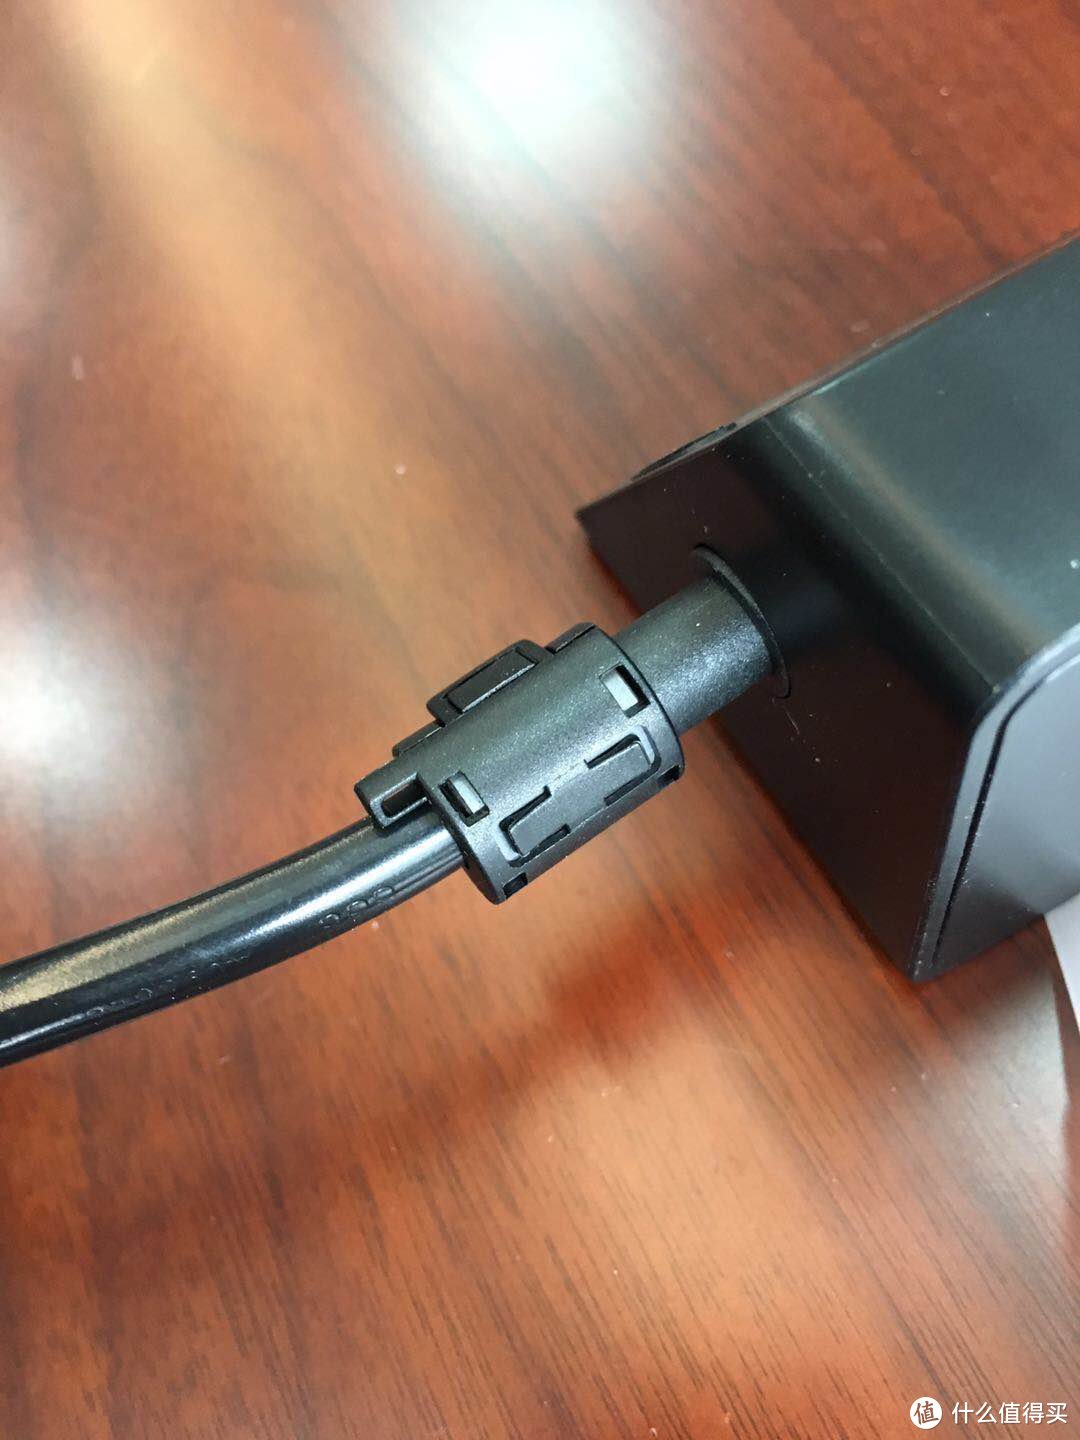 有点实用的小插座-飞利浦便携迷你USB桌面旅行插座评测